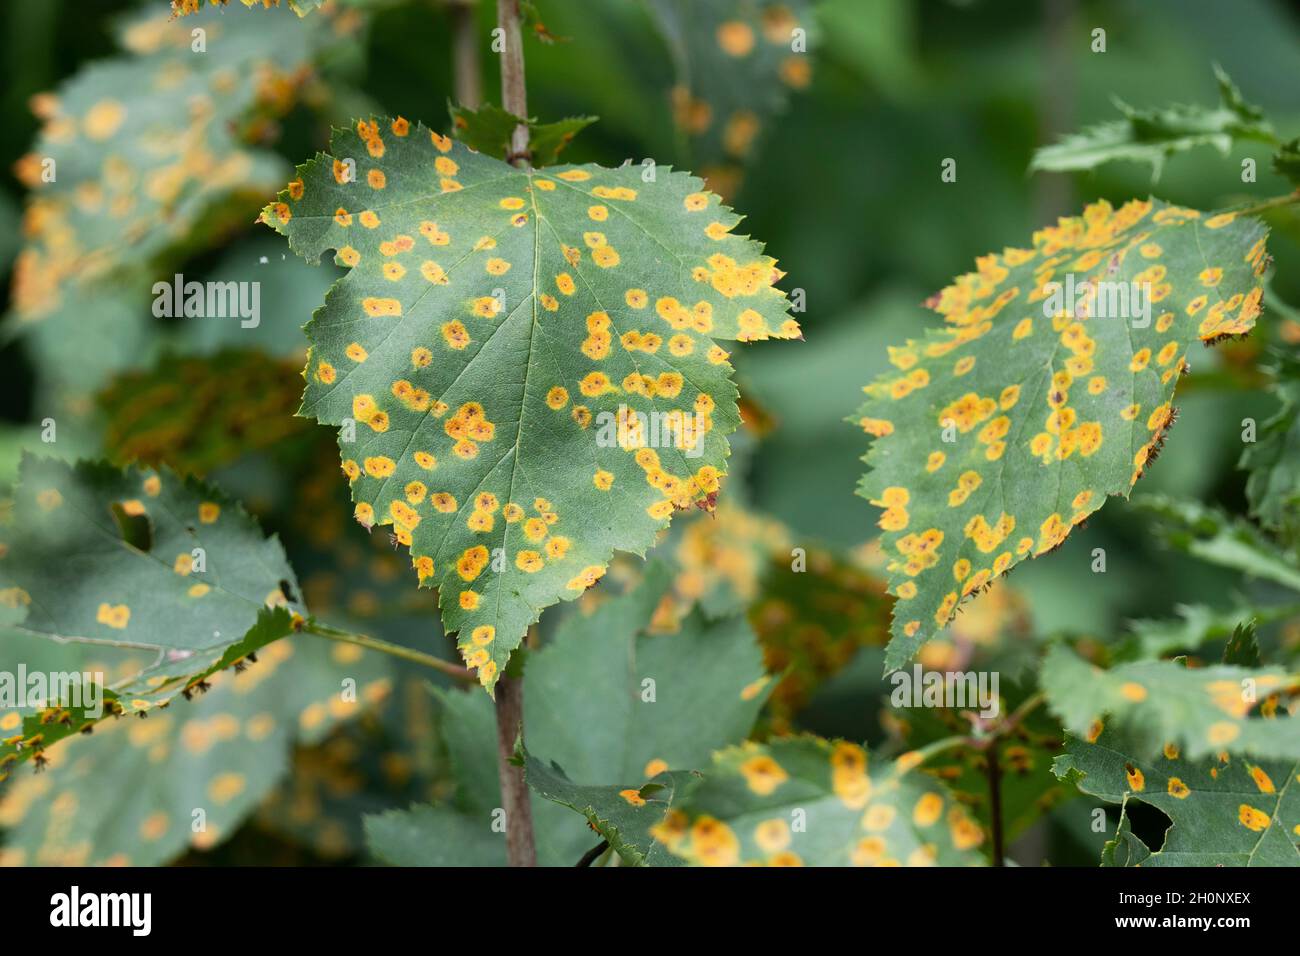 Enfermedad de Rust de Hawthorn, hojas infectadas con Rust Fungus (Gymnosporangium globosum) Foto de stock